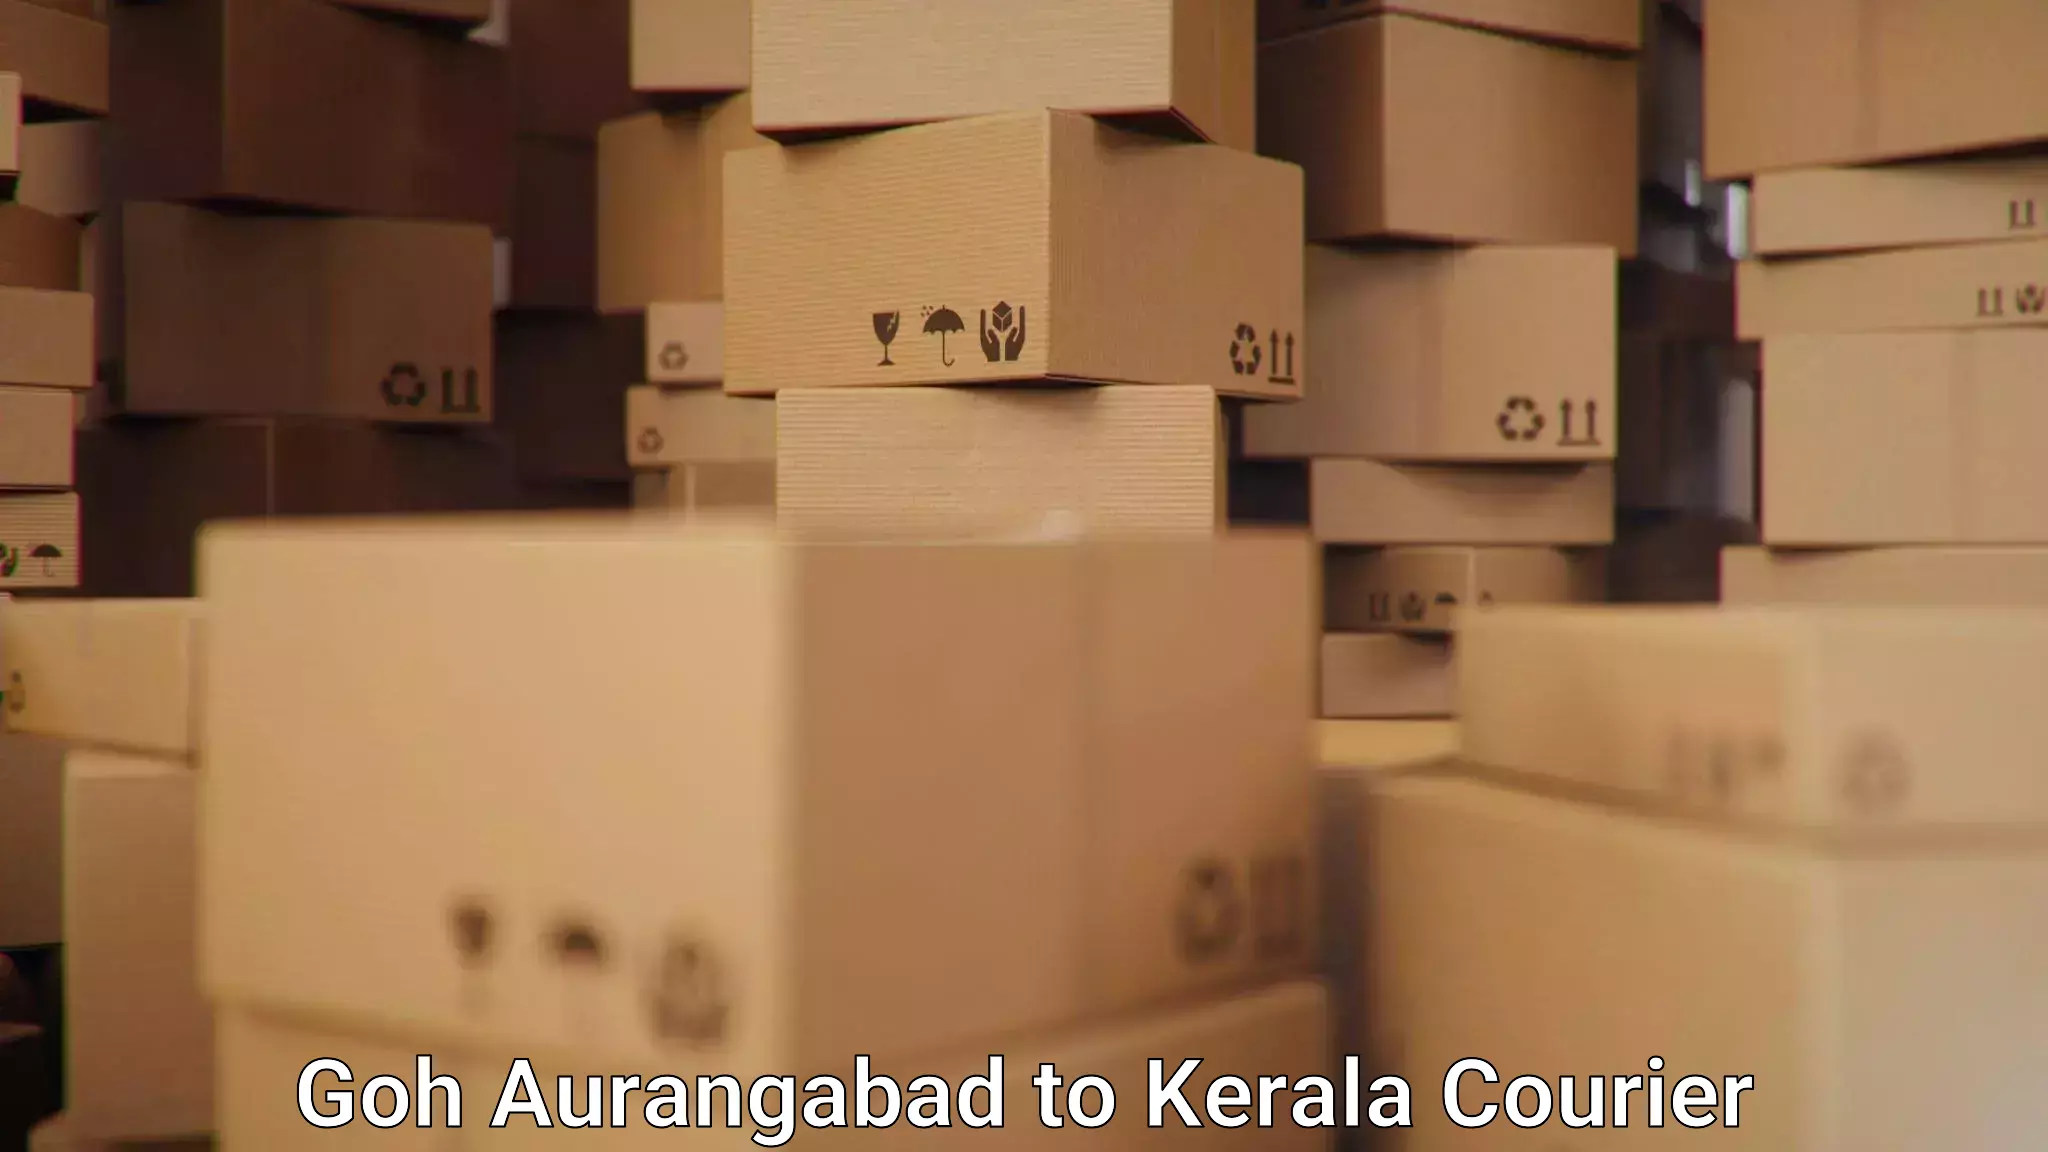 Courier service comparison in Goh Aurangabad to Kerala